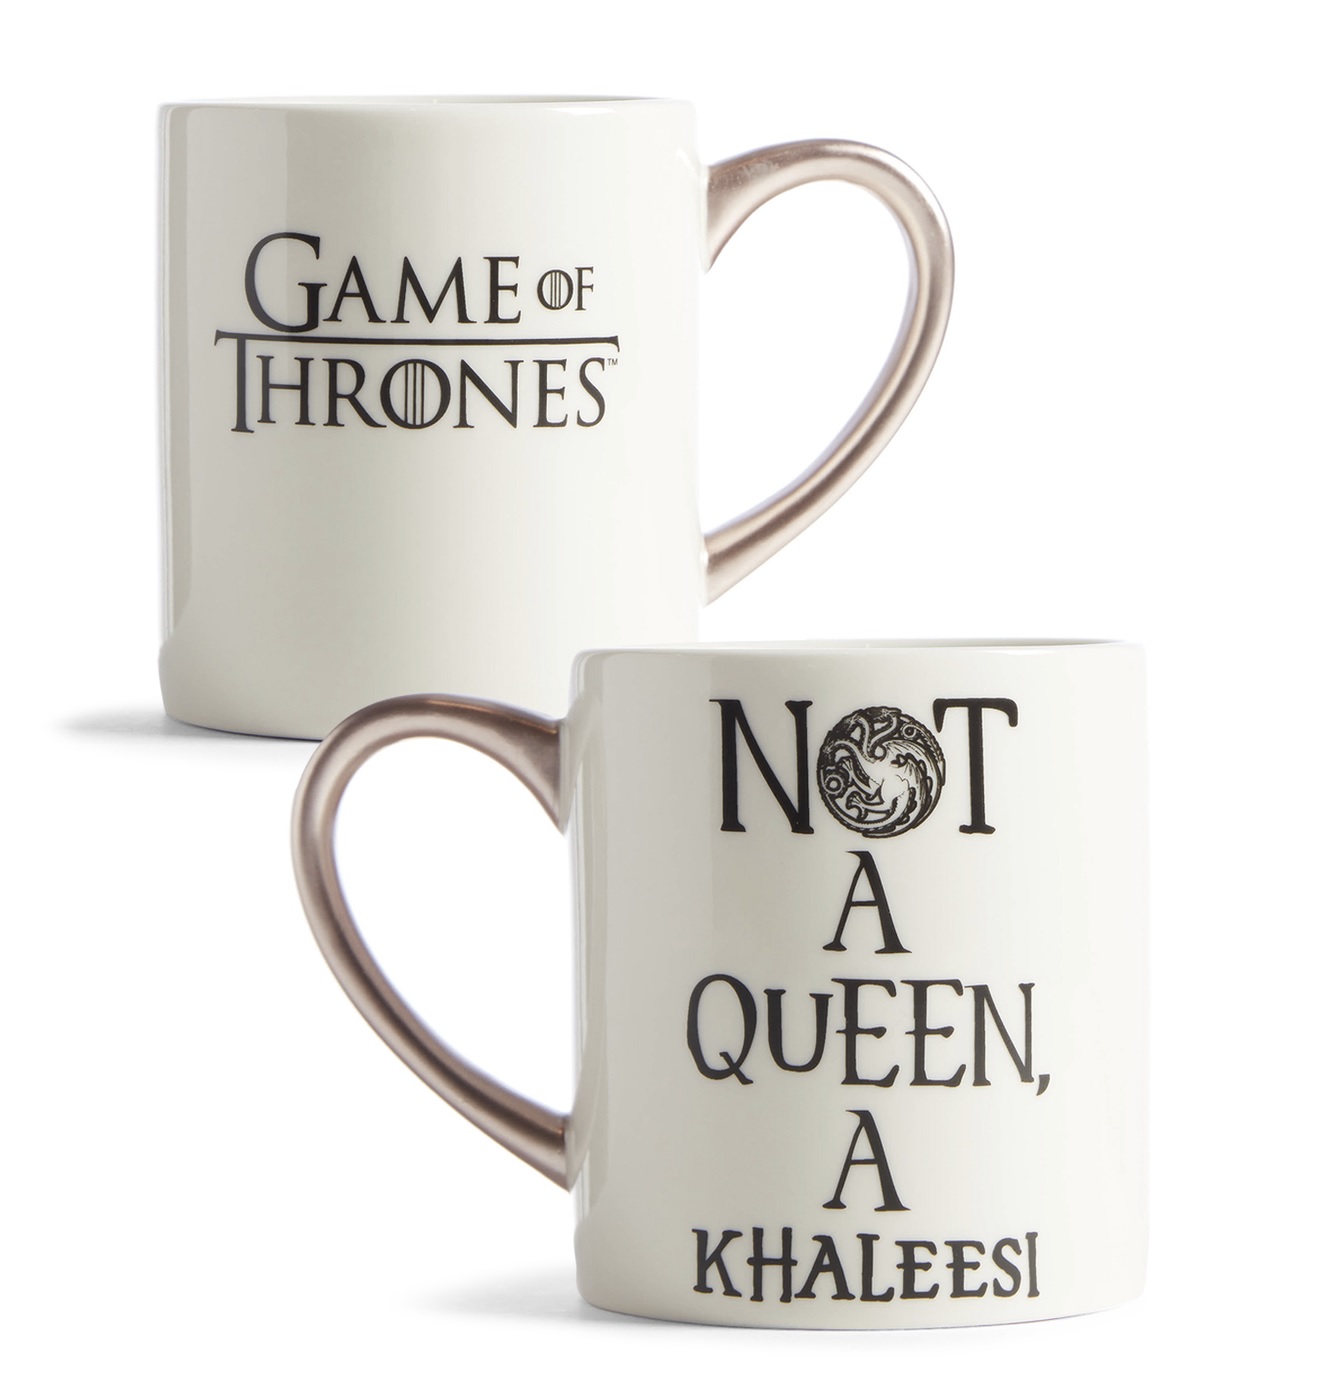 Not A Queen a Khaleesi Mug